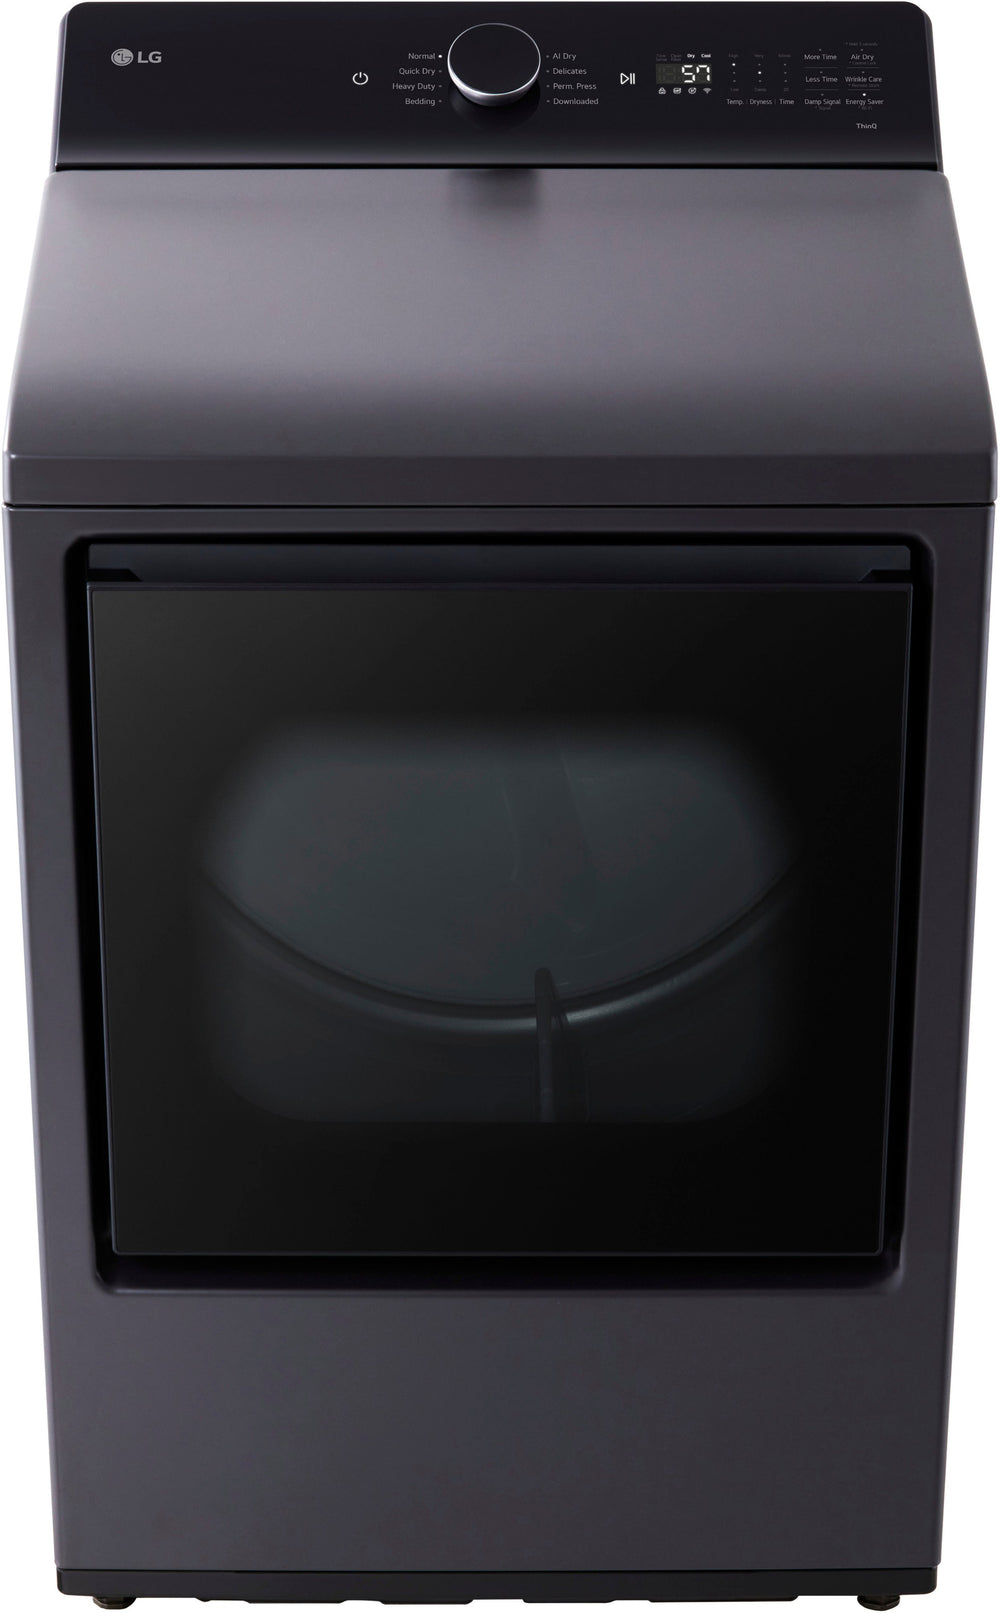 LG - 7.3 Cu. Ft. Smart Gas Dryer with EasyLoad Door - Matte Black_1